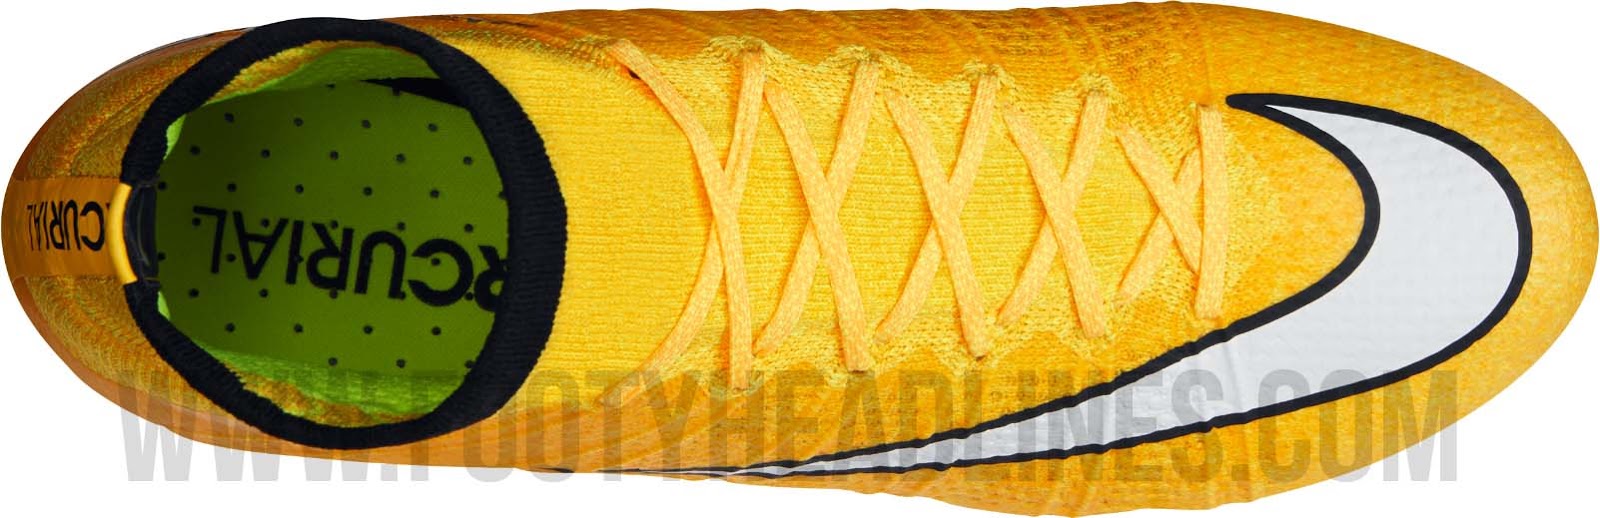 legemliggøre femte Forbavselse Orange Nike Mercurial Superfly 14-15 Boot Released - Footy Headlines